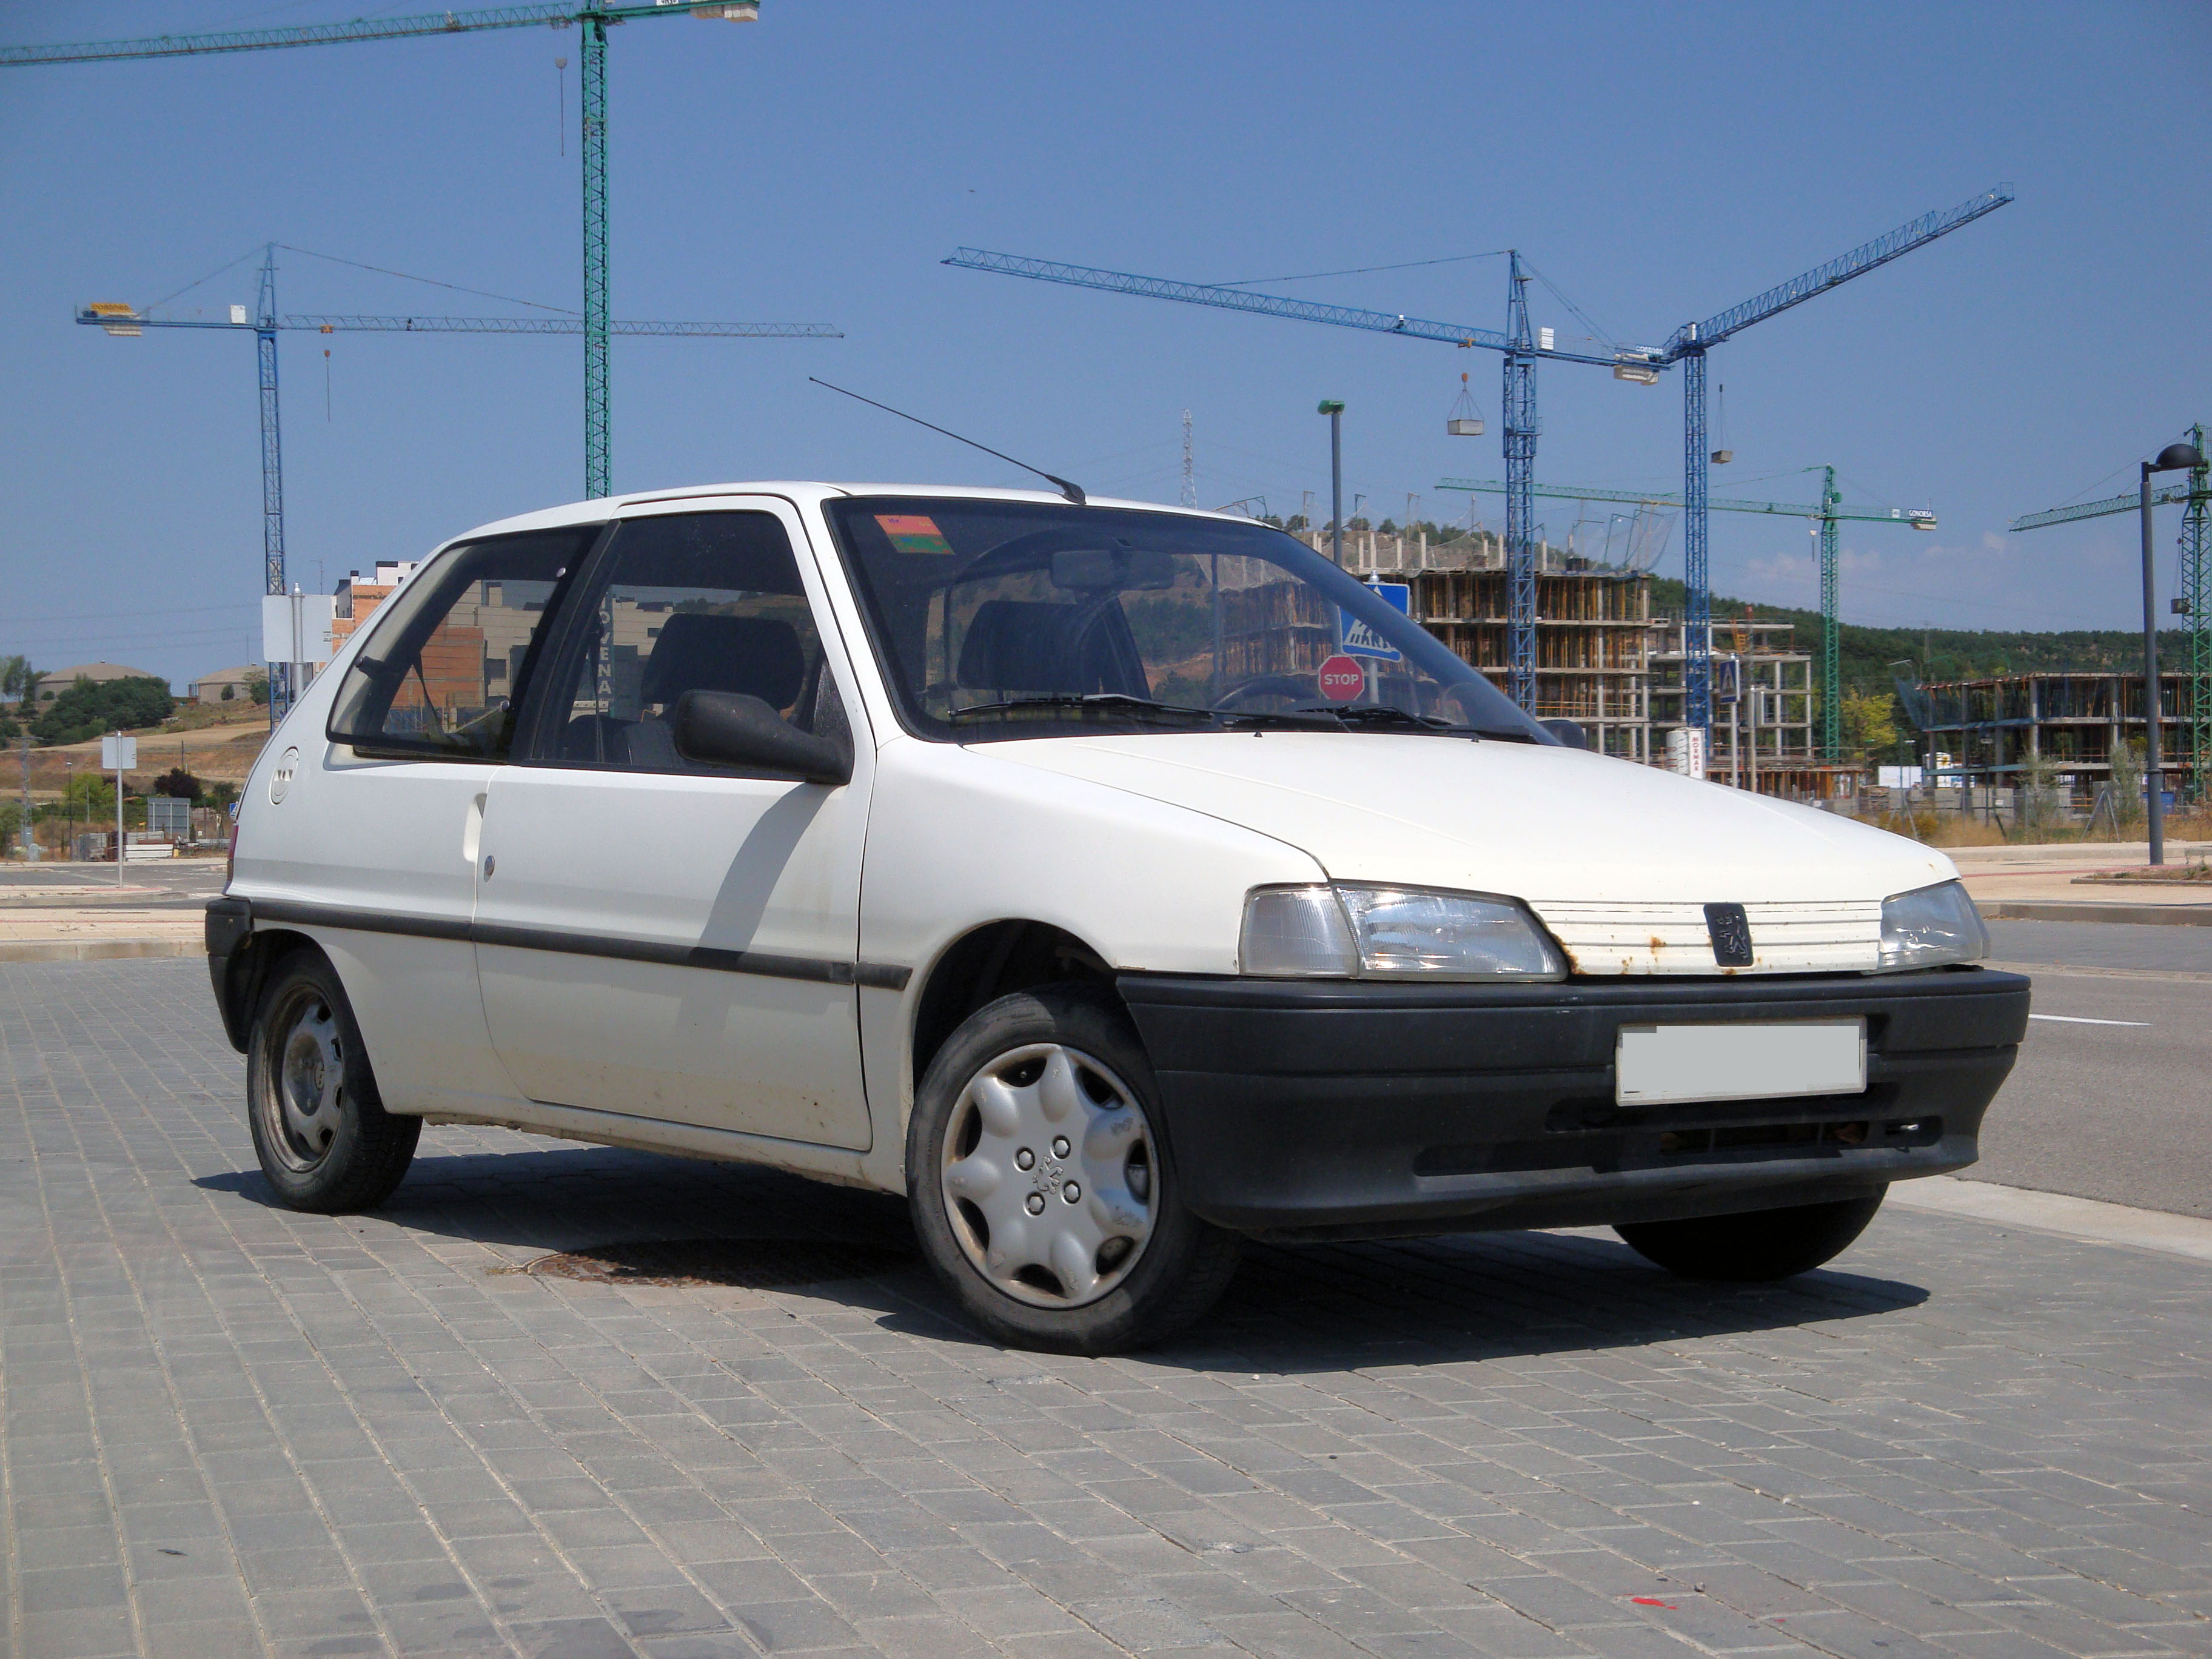 Peugeot 106 XR